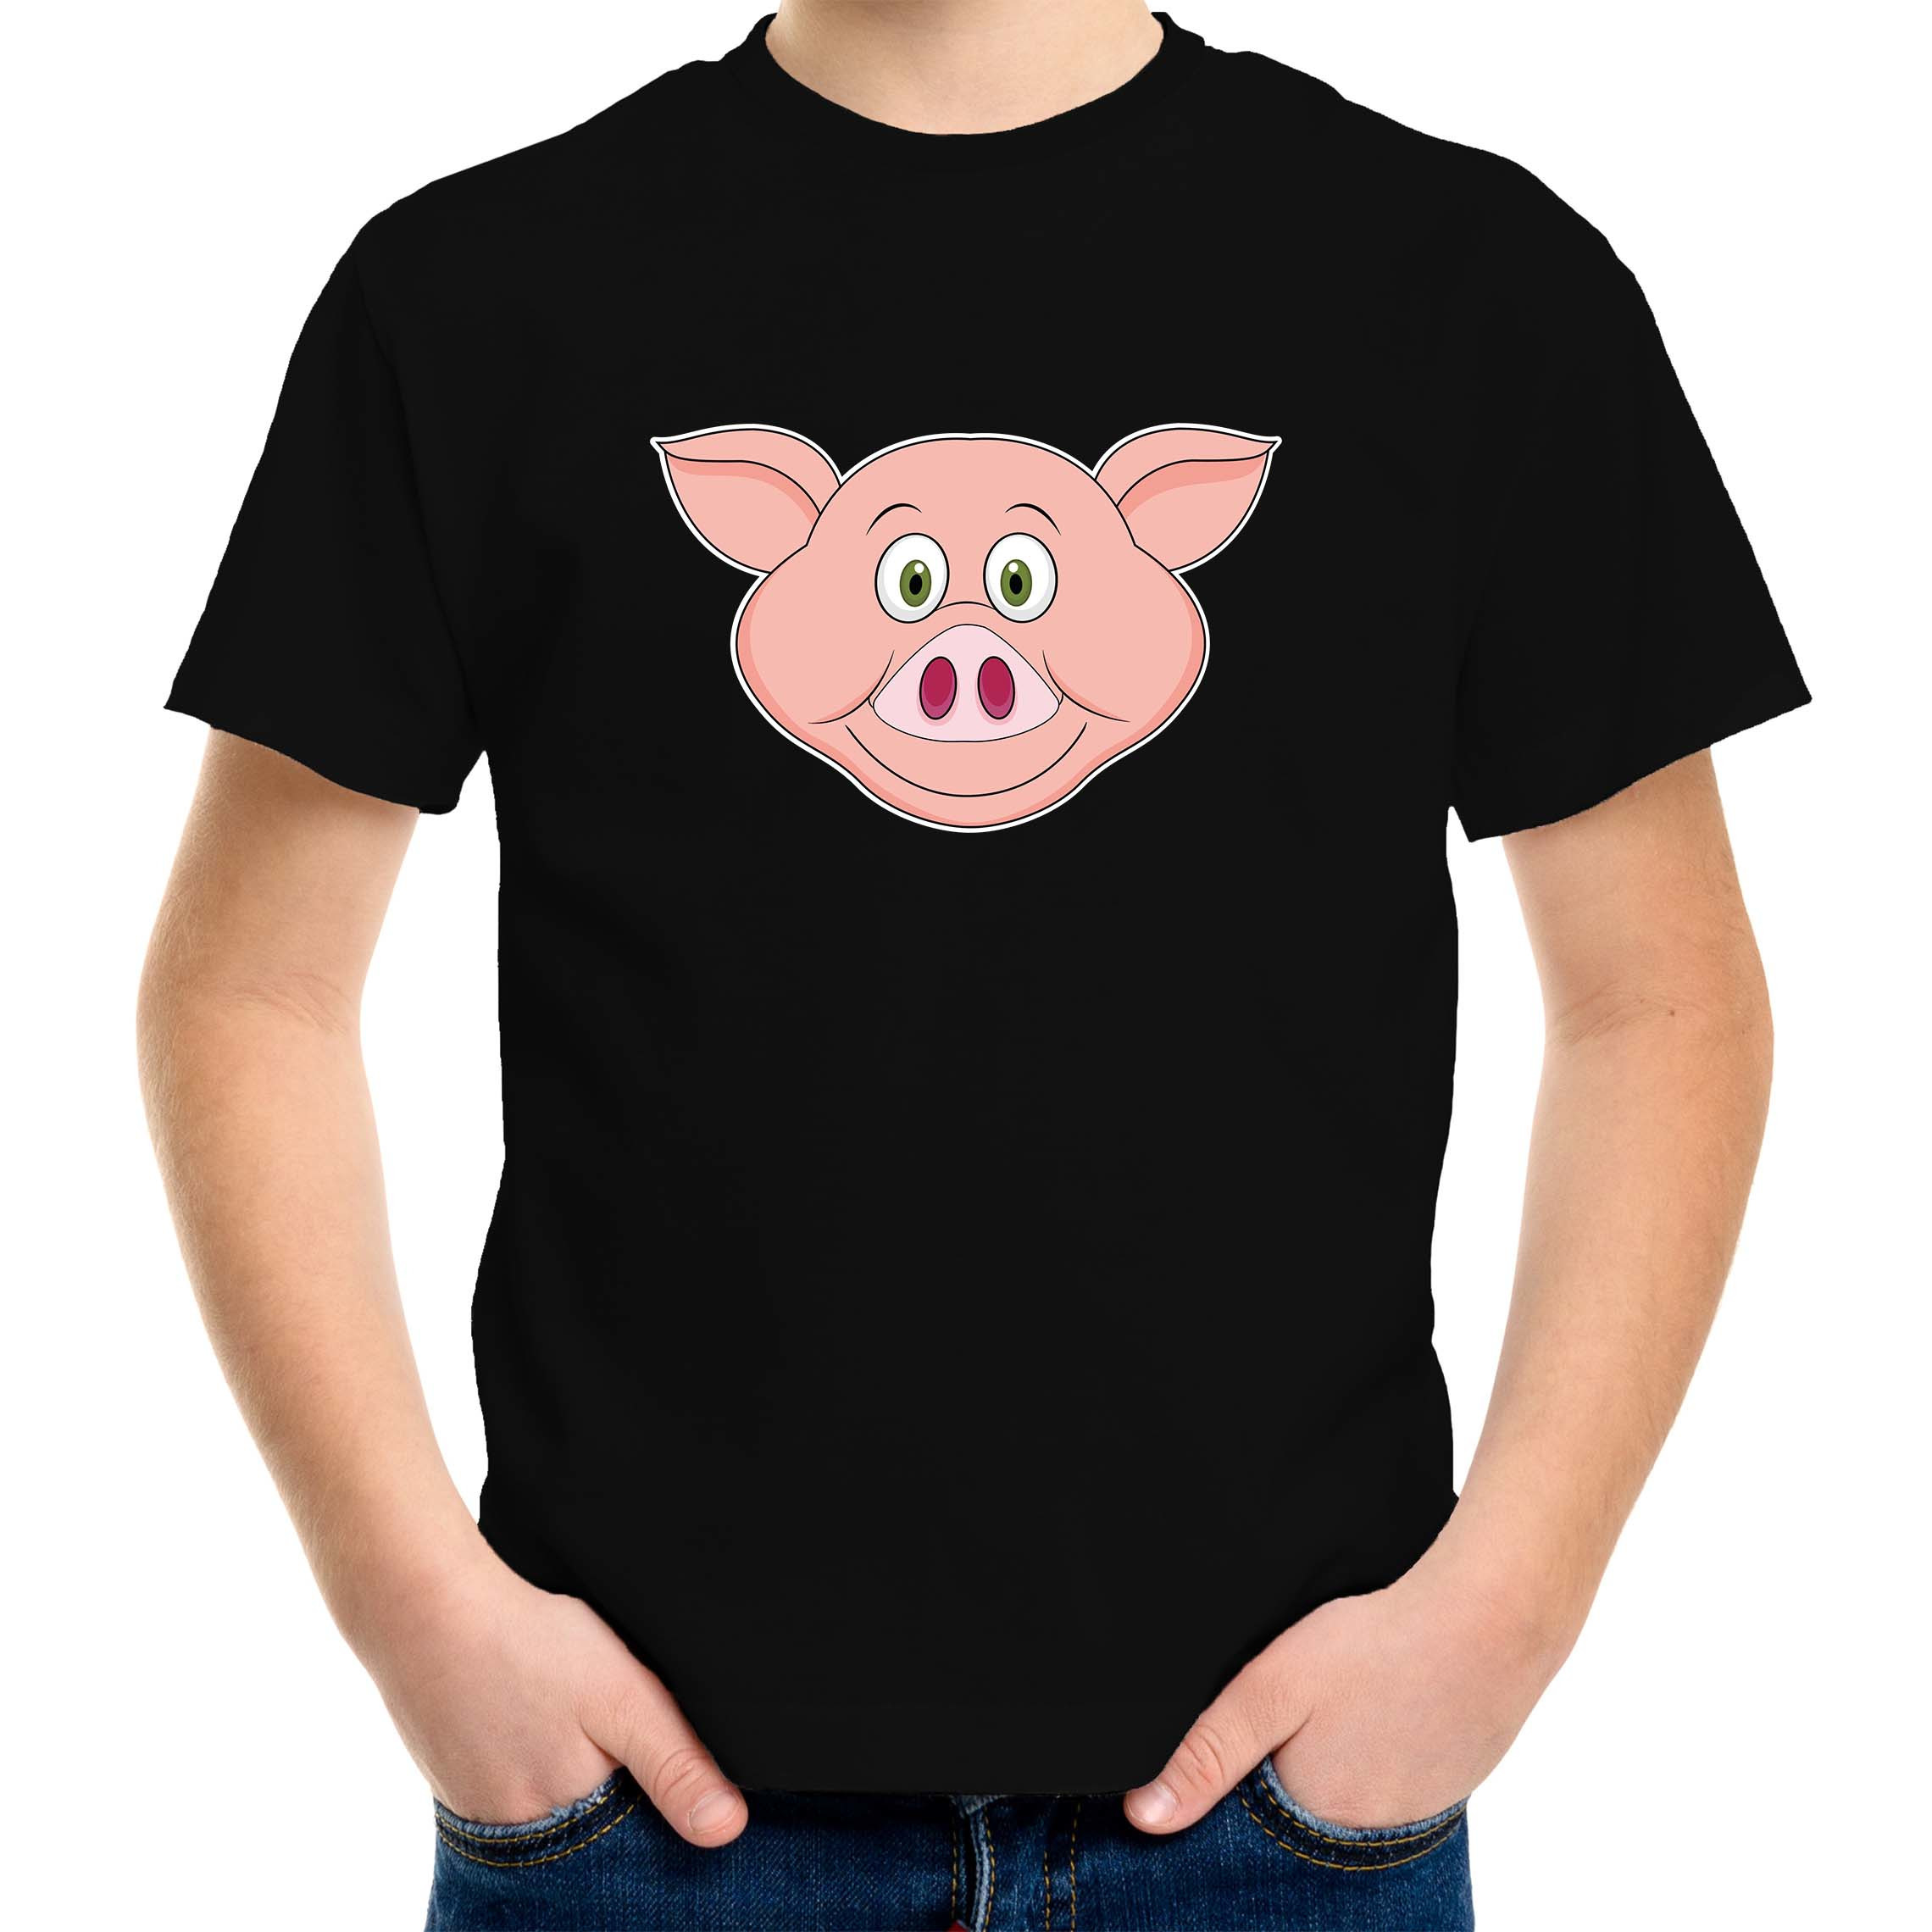 Cartoon varken t-shirt zwart voor jongens en meisjes - Cartoon dieren t-shirts kinderen